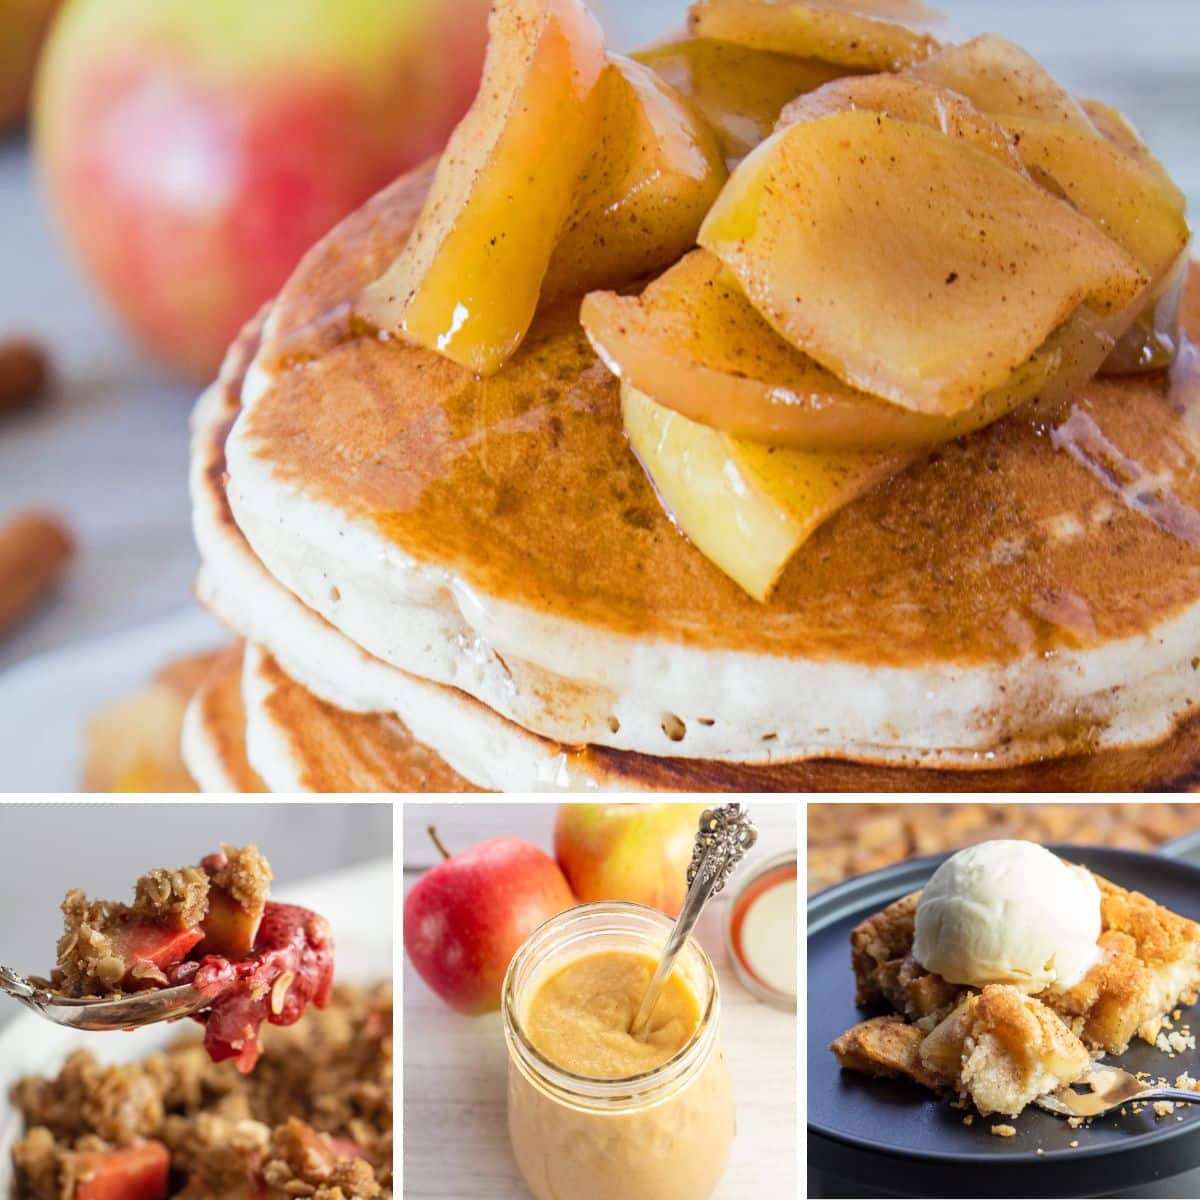 De beste appelrecepten om elke dag van de week te maken en van te genieten met 4 recepten in een collageafbeelding.